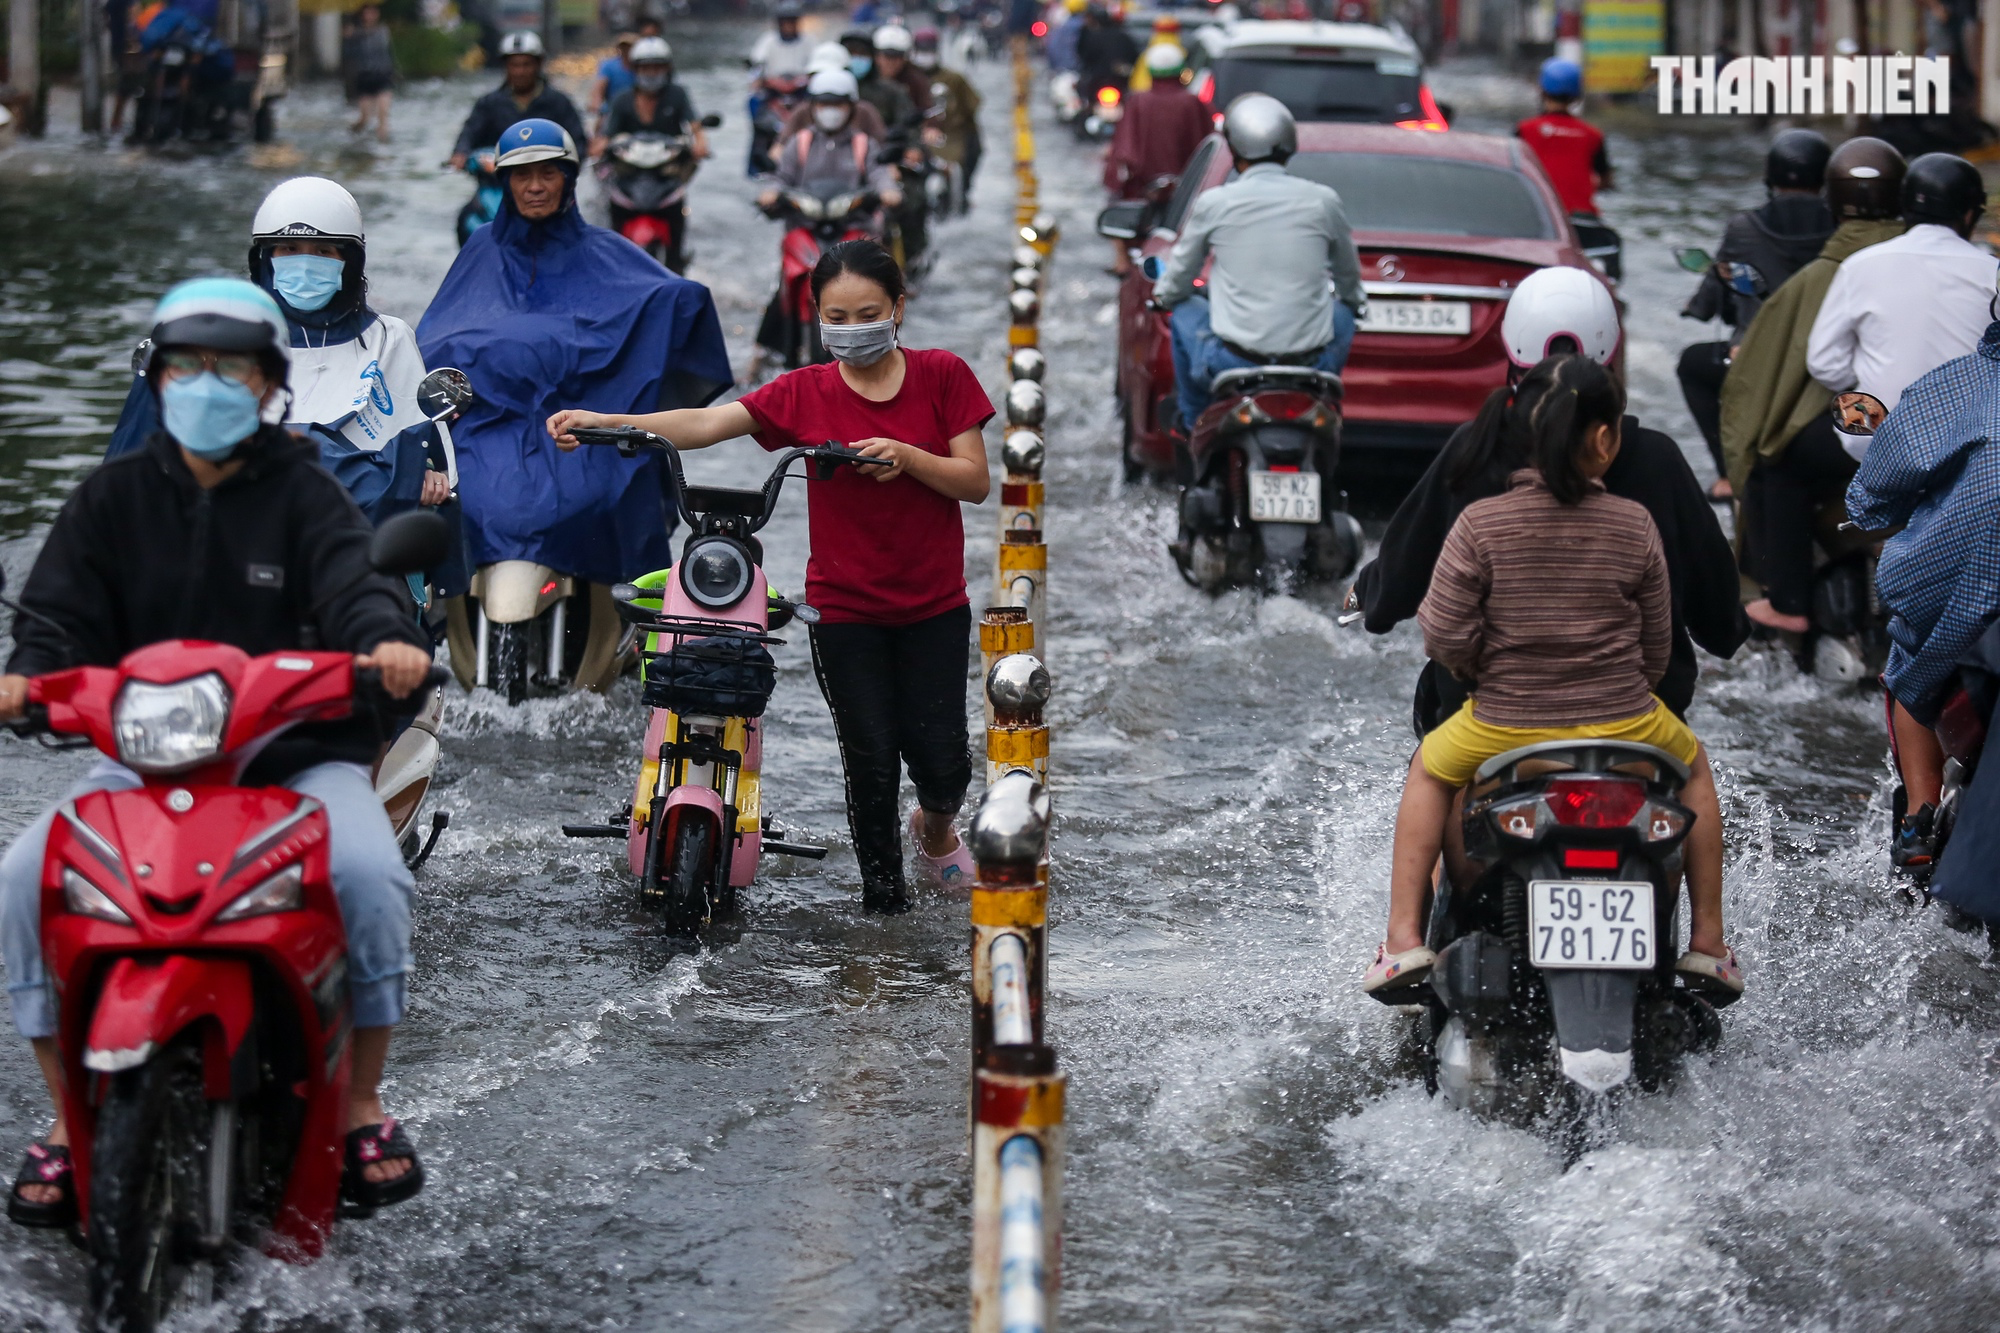 Đường TP.HCM ngập lênh láng sau mưa, người dân vất vả lội nước về nhà - Ảnh 1.